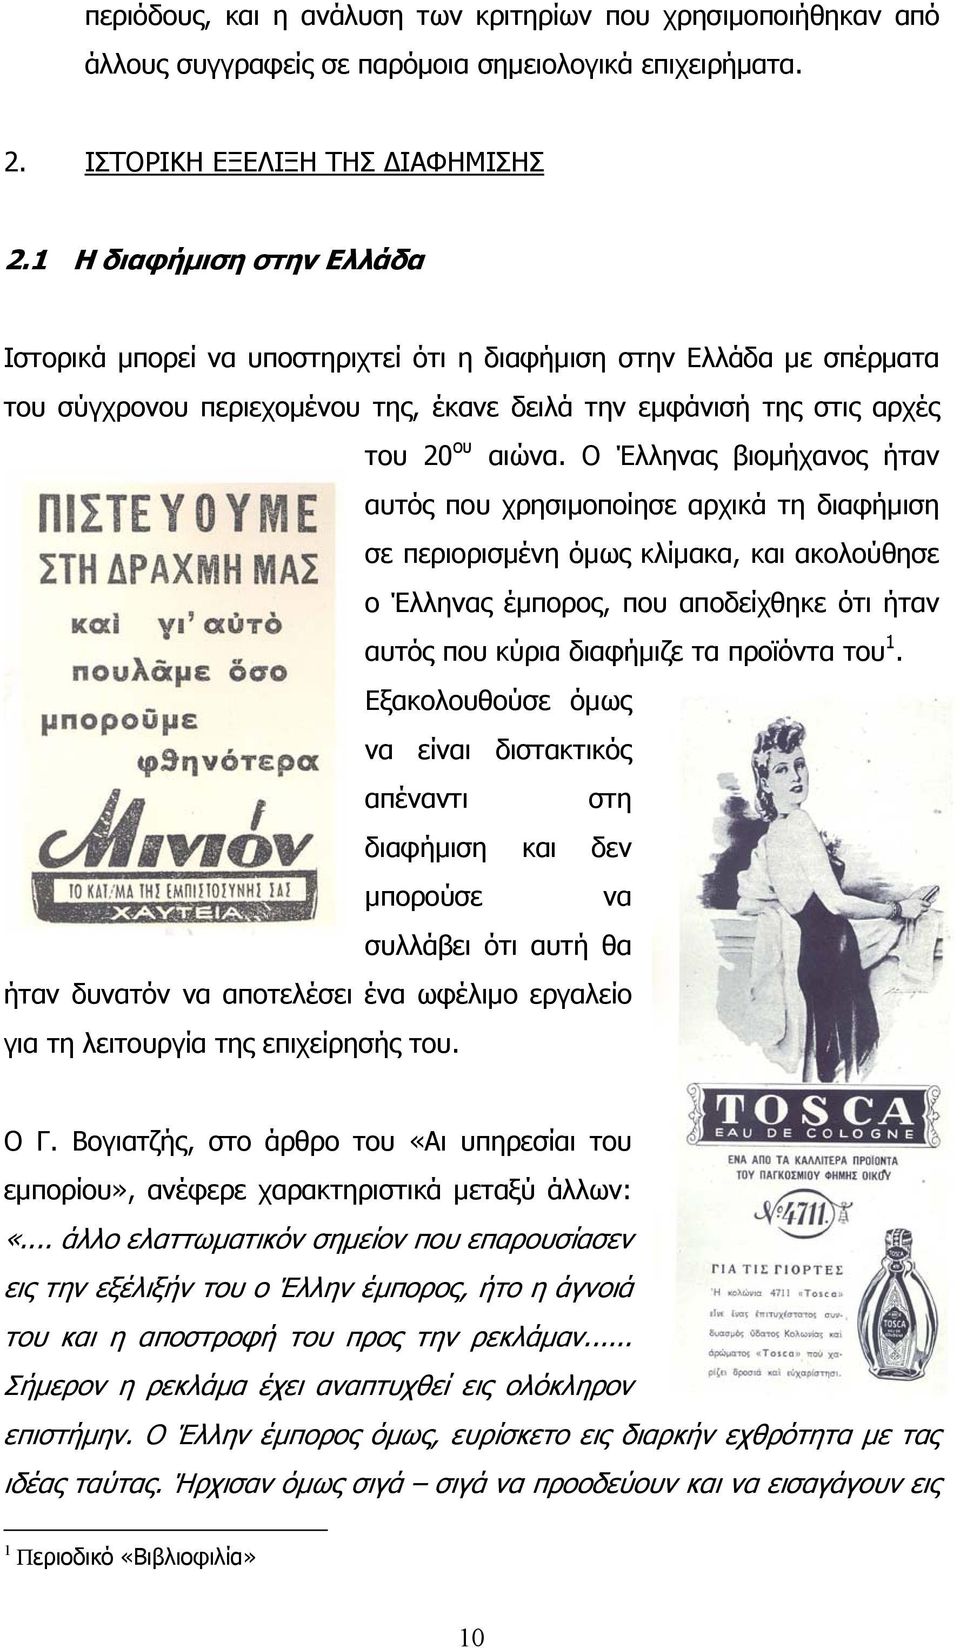 Ο Έλληνας βιομήχανος ήταν αυτός που χρησιμοποίησε αρχικά τη διαφήμιση σε περιορισμένη όμως κλίμακα, και ακολούθησε ο Έλληνας έμπορος, που αποδείχθηκε ότι ήταν αυτός που κύρια διαφήμιζε τα προϊόντα